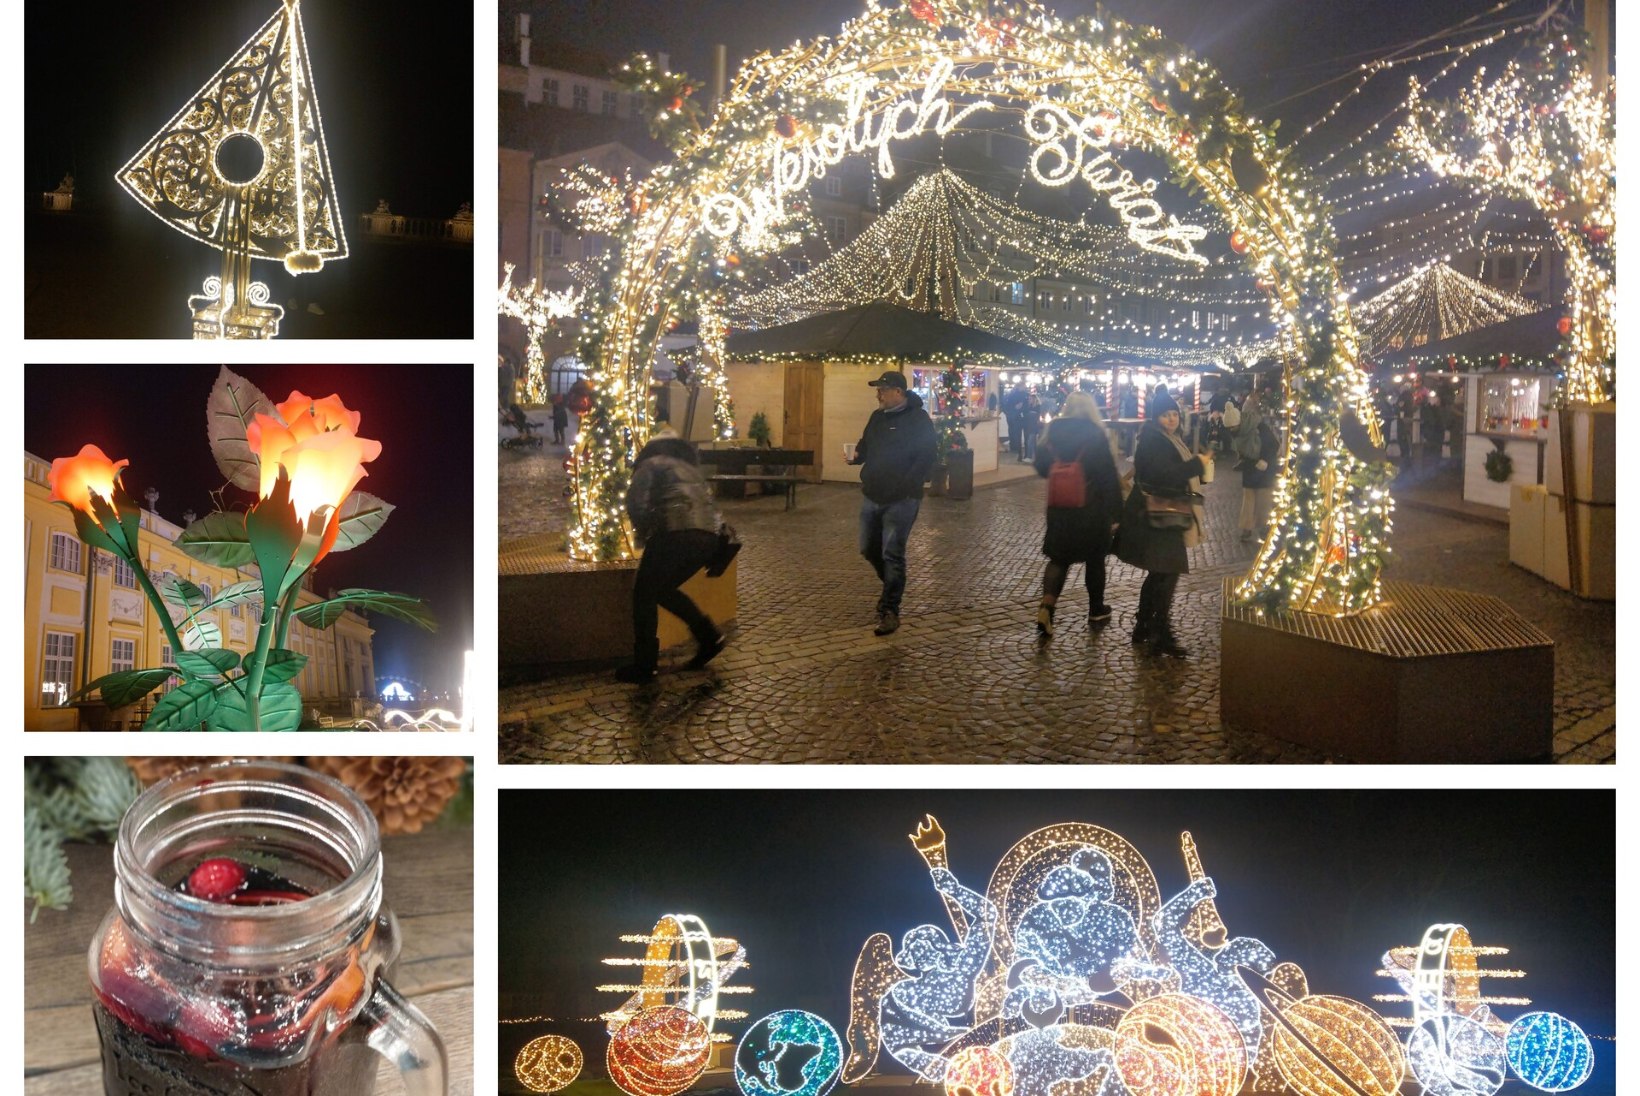 GALERII | ROMANTIKUTE VARSSAVI: Poola pealinna talvine tähesäras paraadvorm rõõmustab meeli ja säästab rahakotti